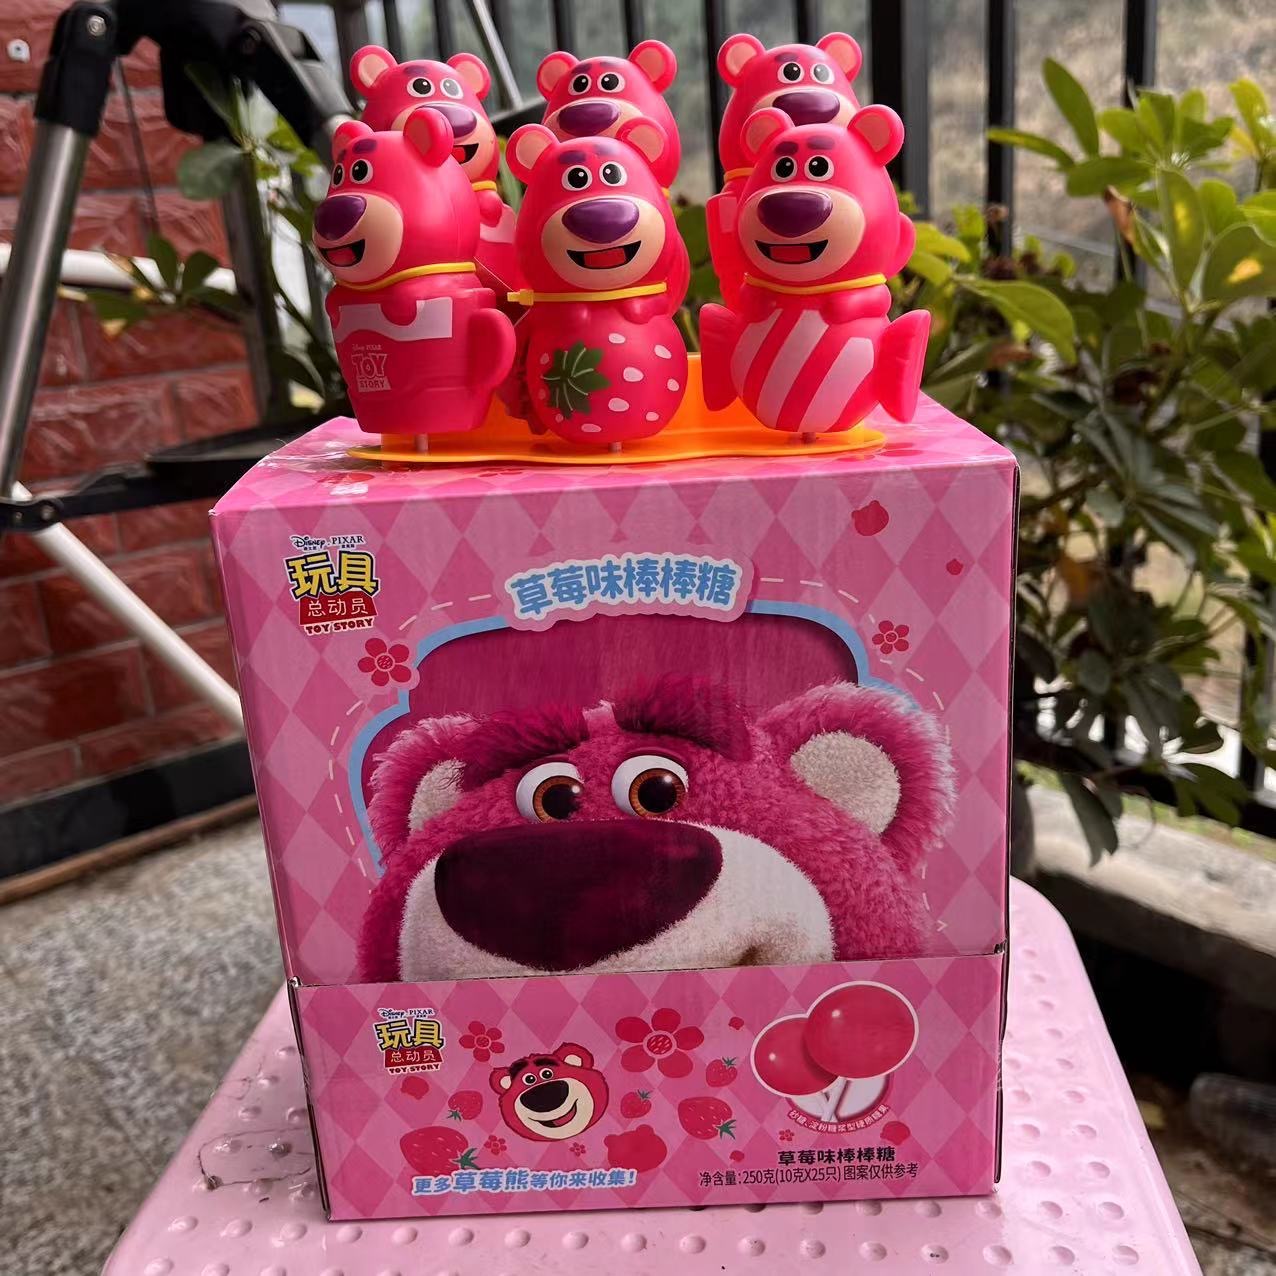 【滨崎】草莓熊玩具棒棒糖 10G